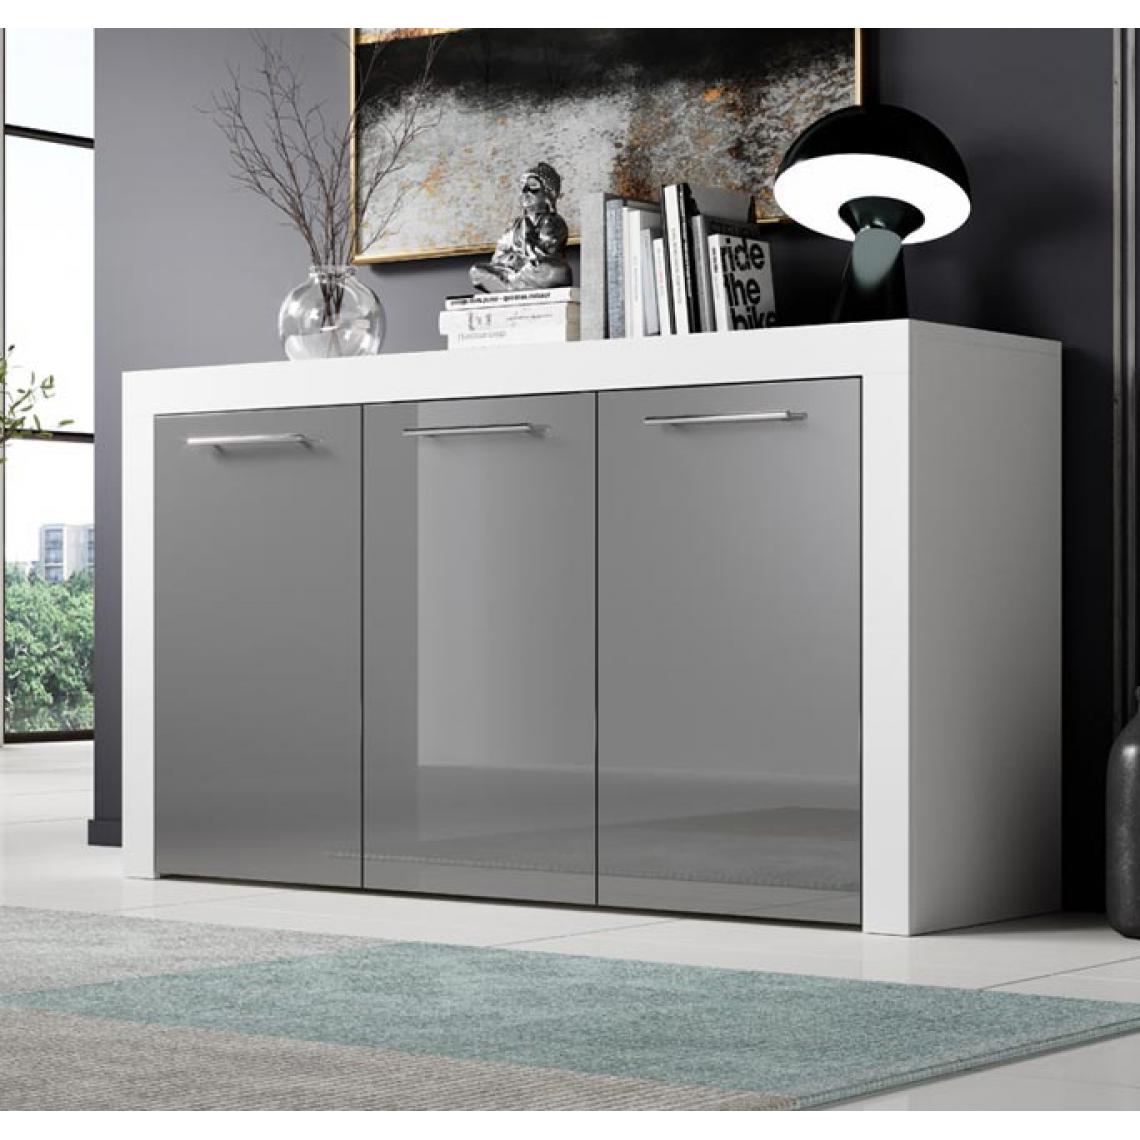 Design Ameublement - Bahut modèle Nelia couleur blanc et gris - Buffets, chiffonniers